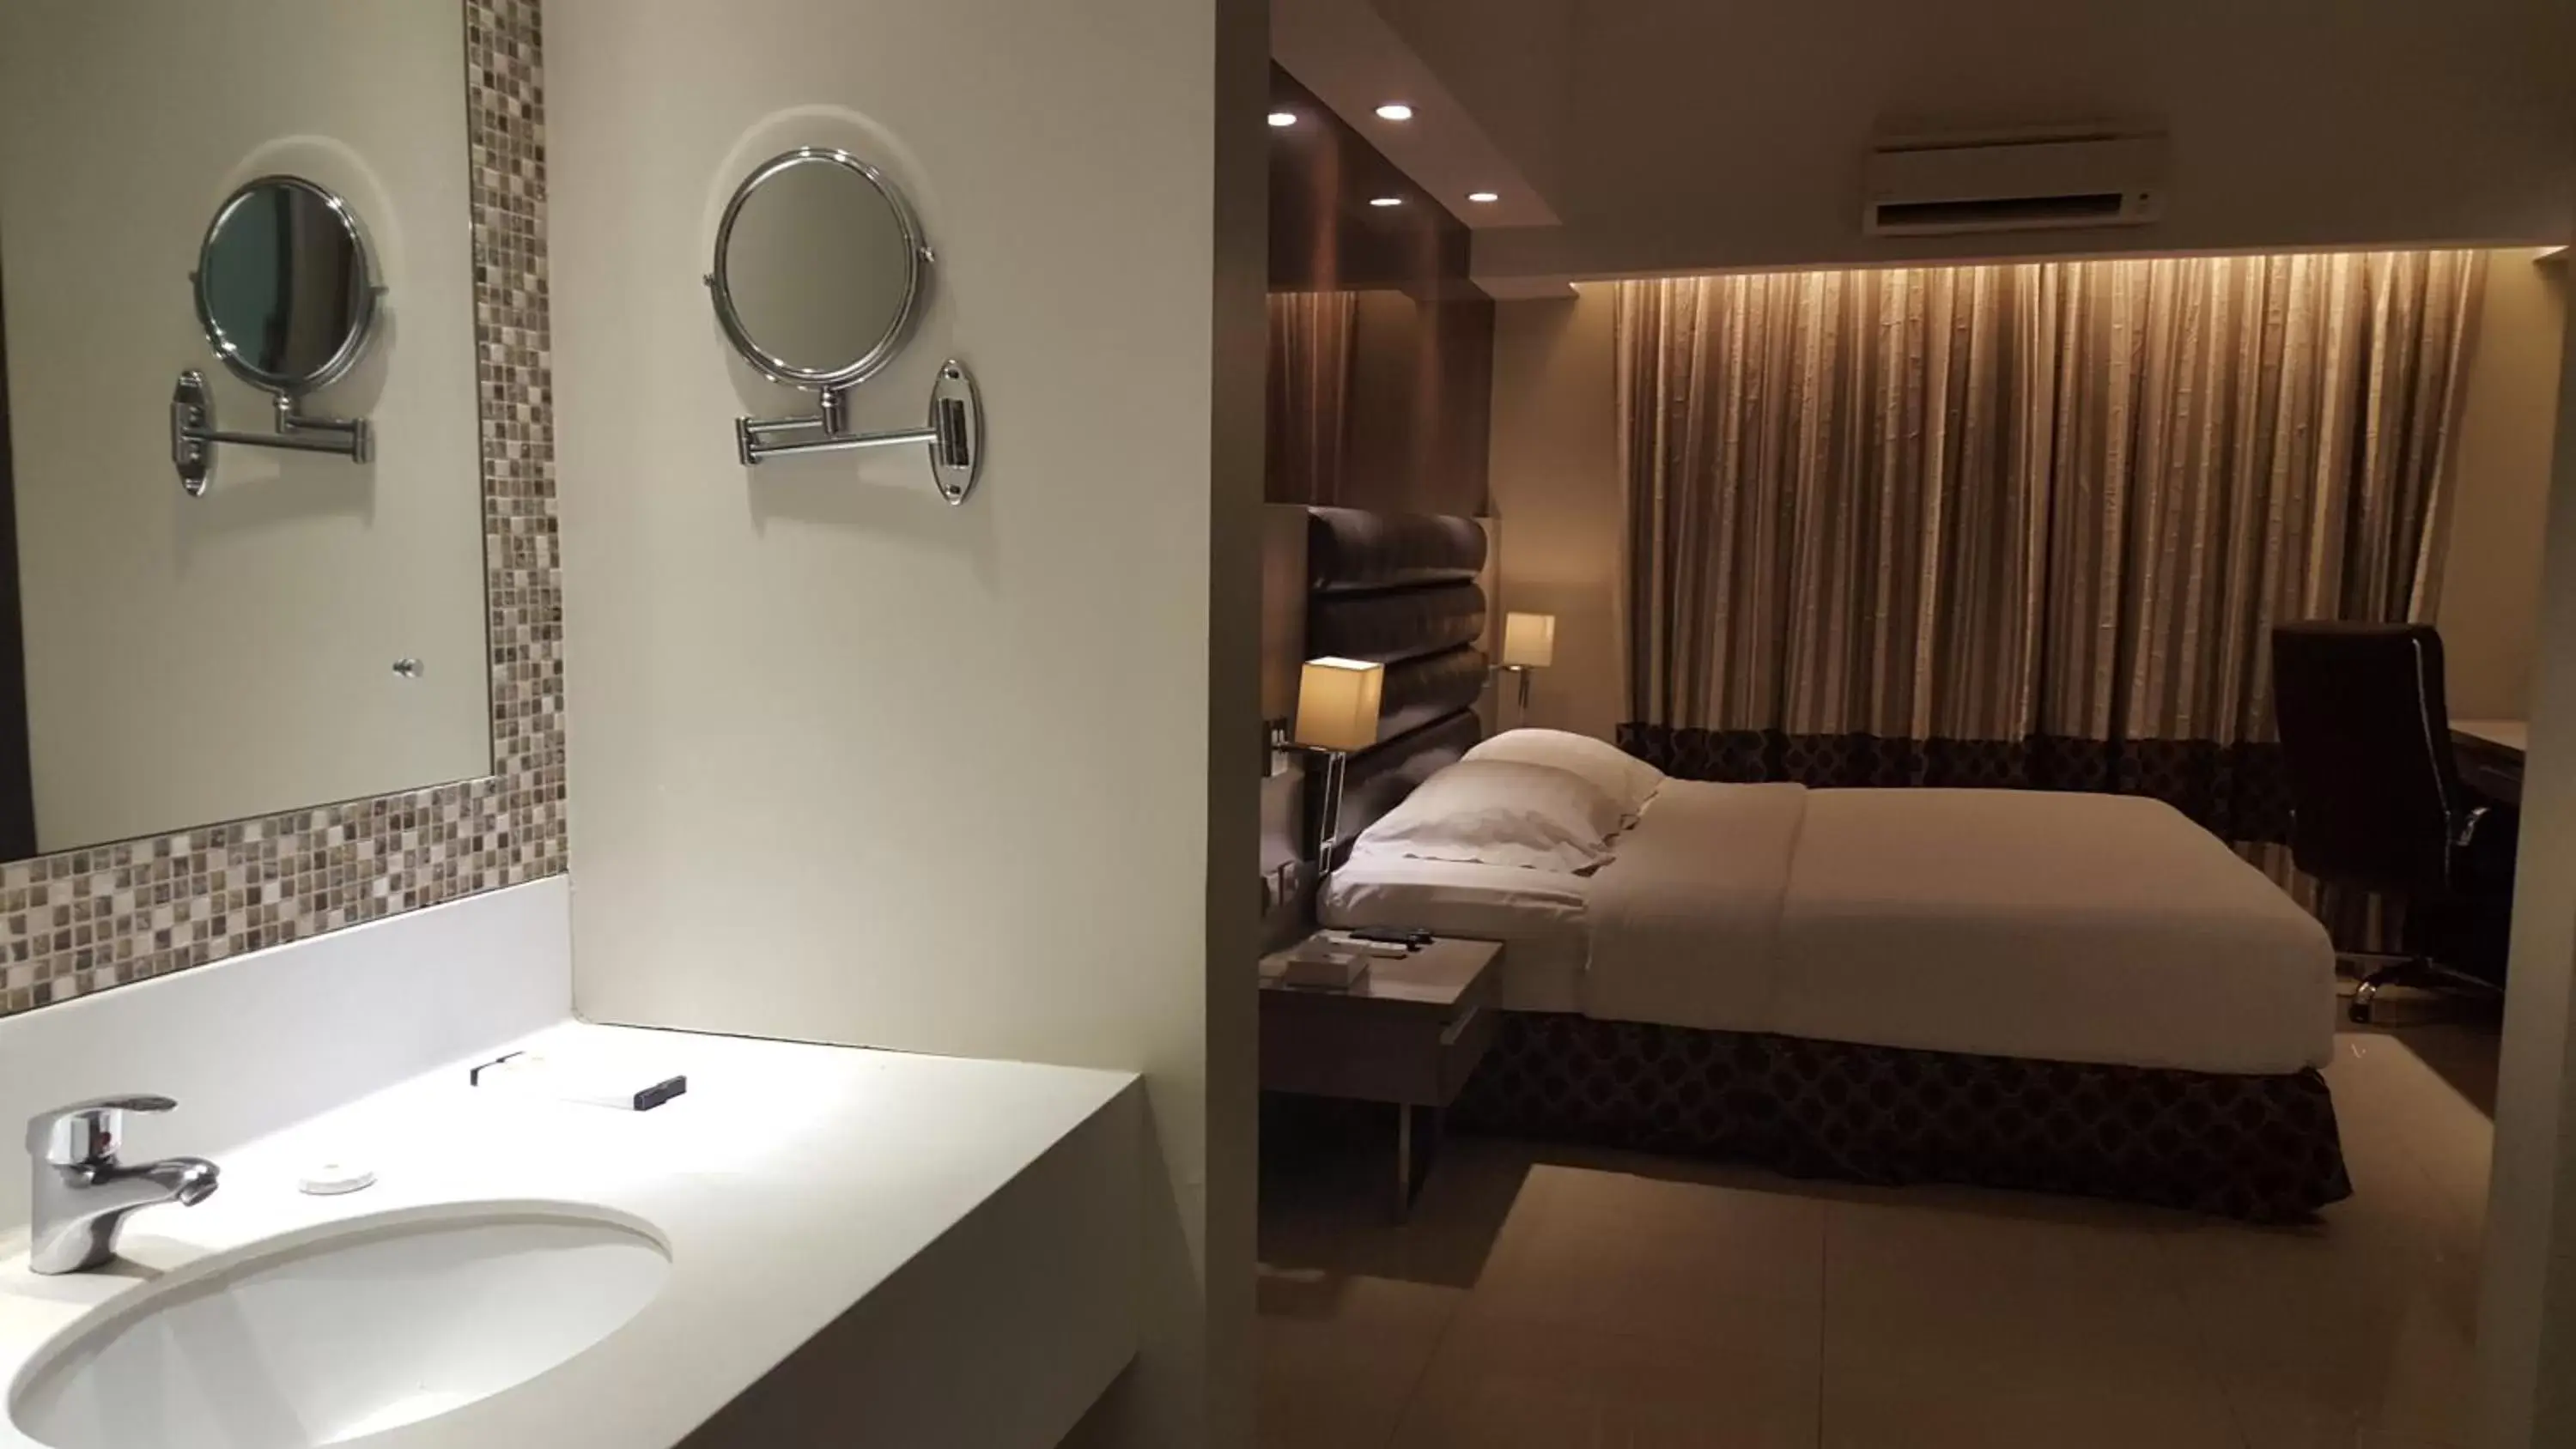 Bedroom, Bathroom in Prime Asia Hotel